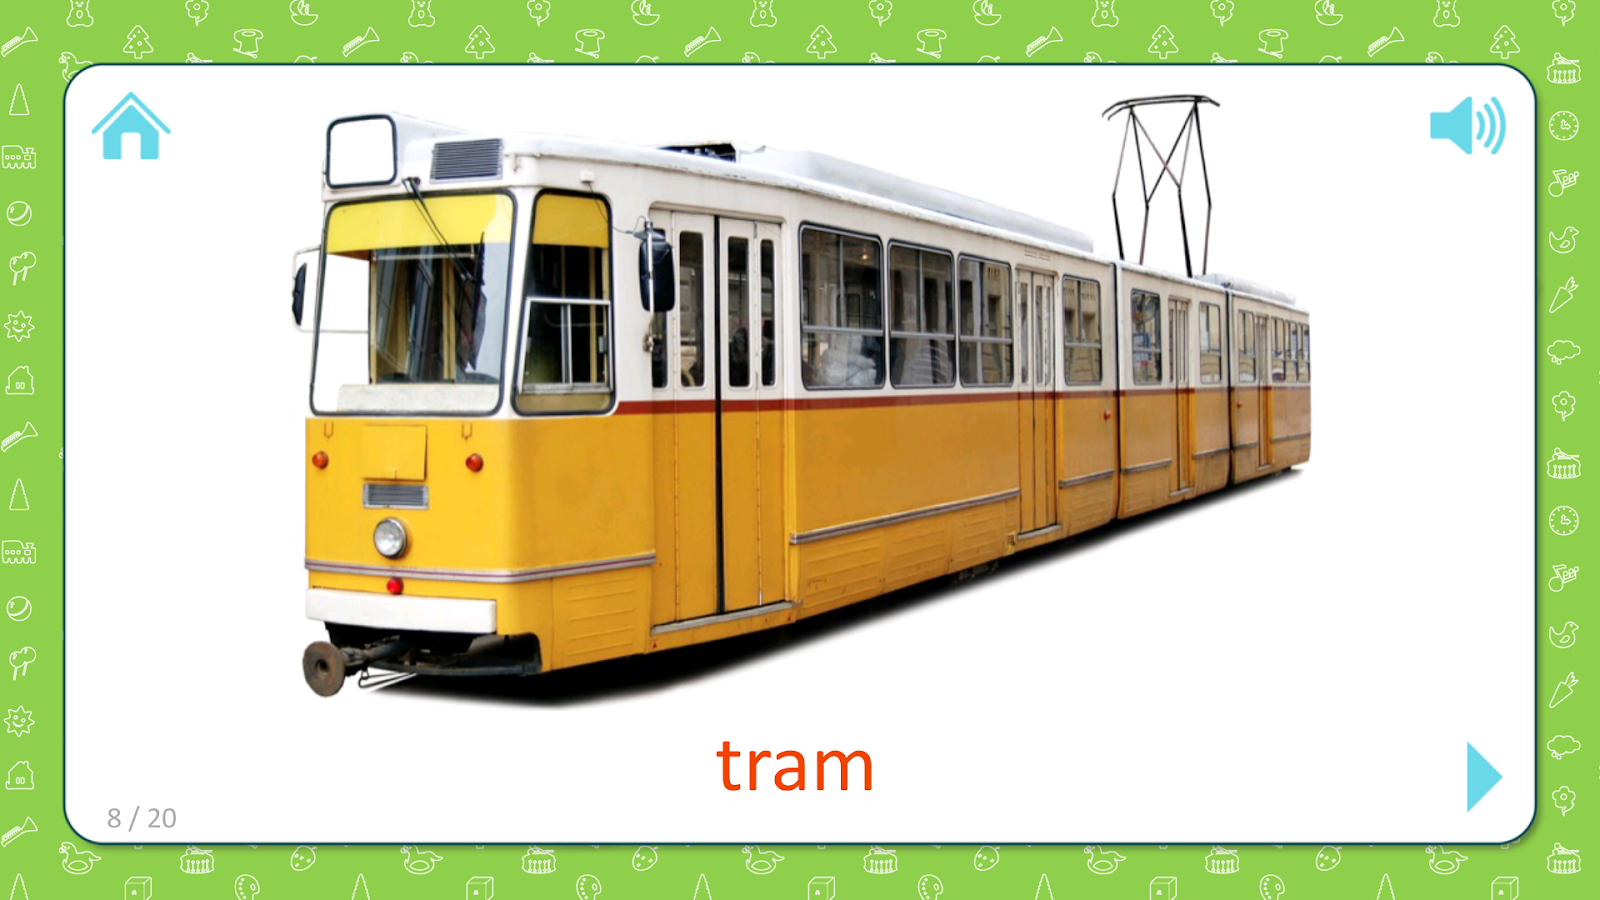 Трамвай по английски. Трамвай карточка для детей. Трамвай для дошкольников. Детям о транспорте. Транспорт карточки для детей.